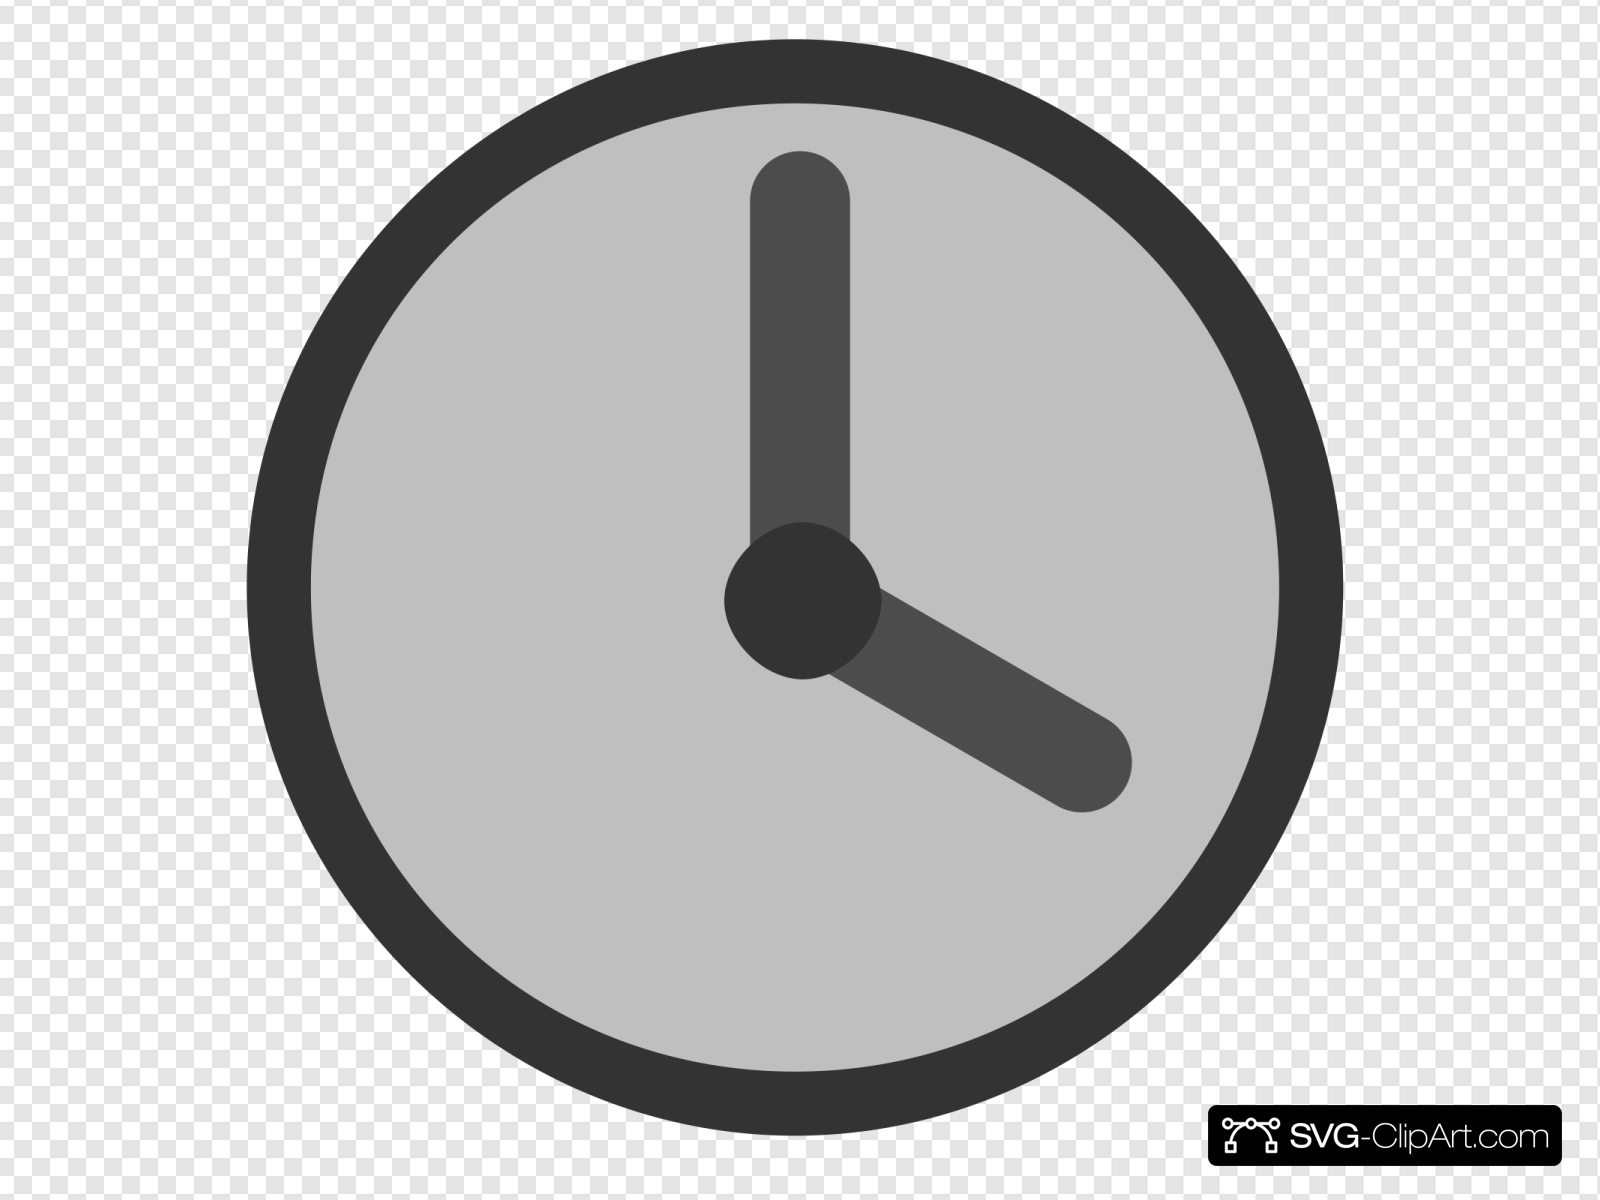 Clock 4:00 Clip art, Icon and SVG.